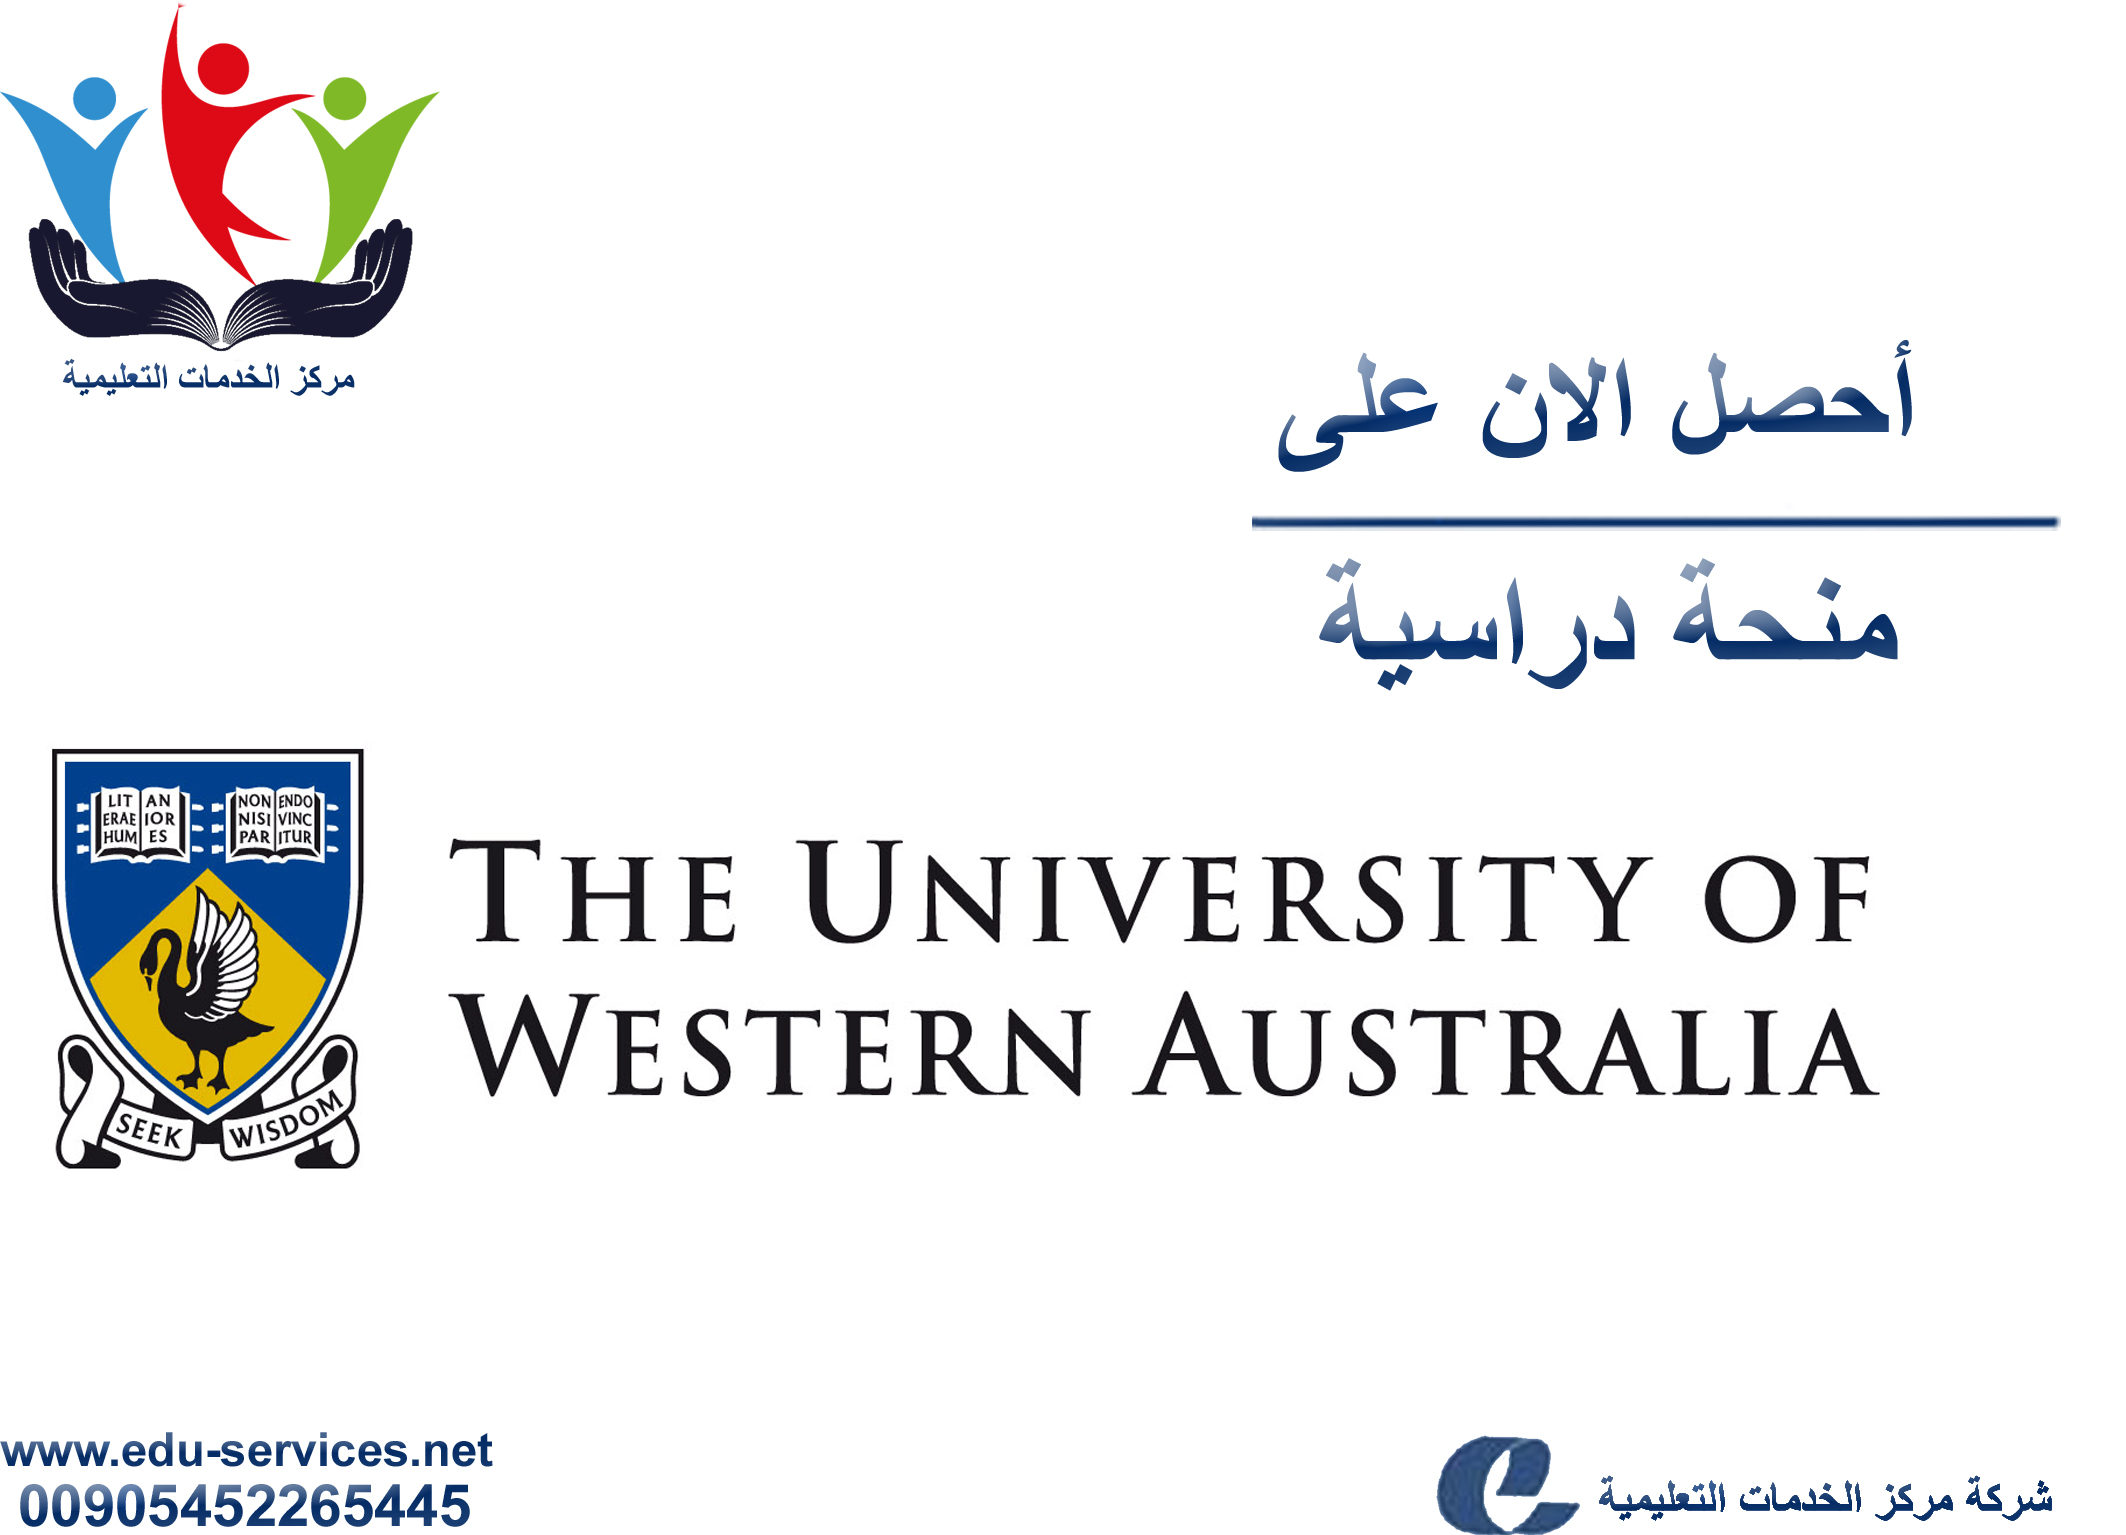 منح دراسية لدرجة MBA من UWA في أستراليا للعام 2018-2019